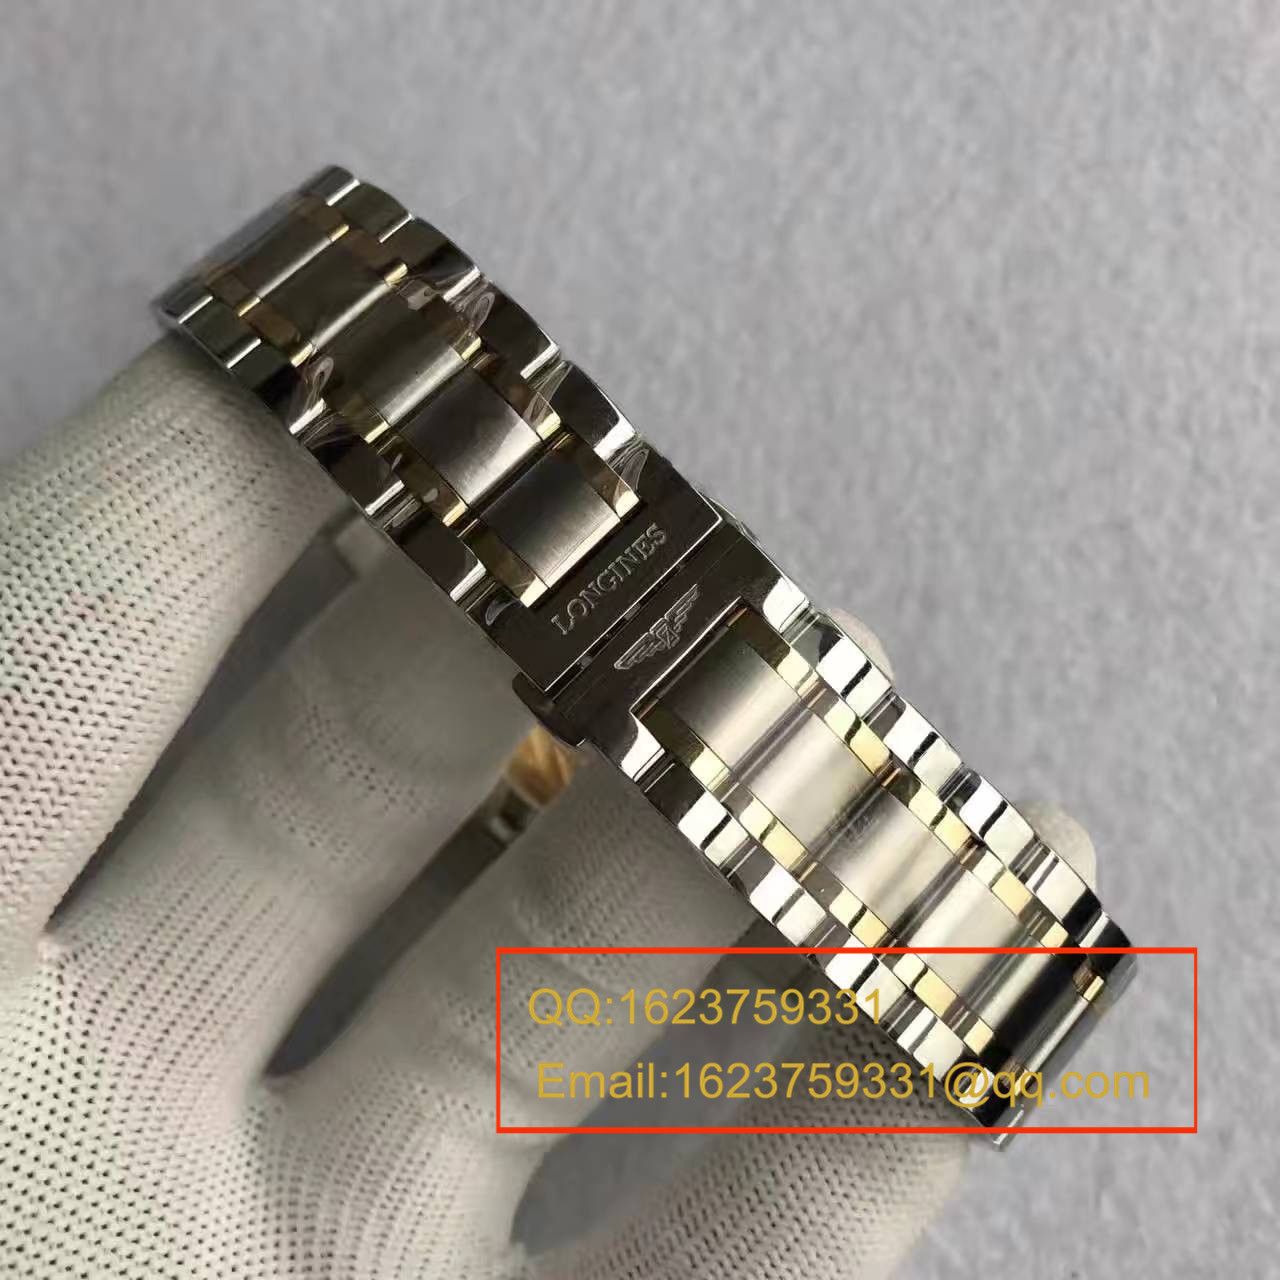 【MK厂一比一超A精仿手表】浪琴制表传统系列L2.628.5.77.7腕表 / L080